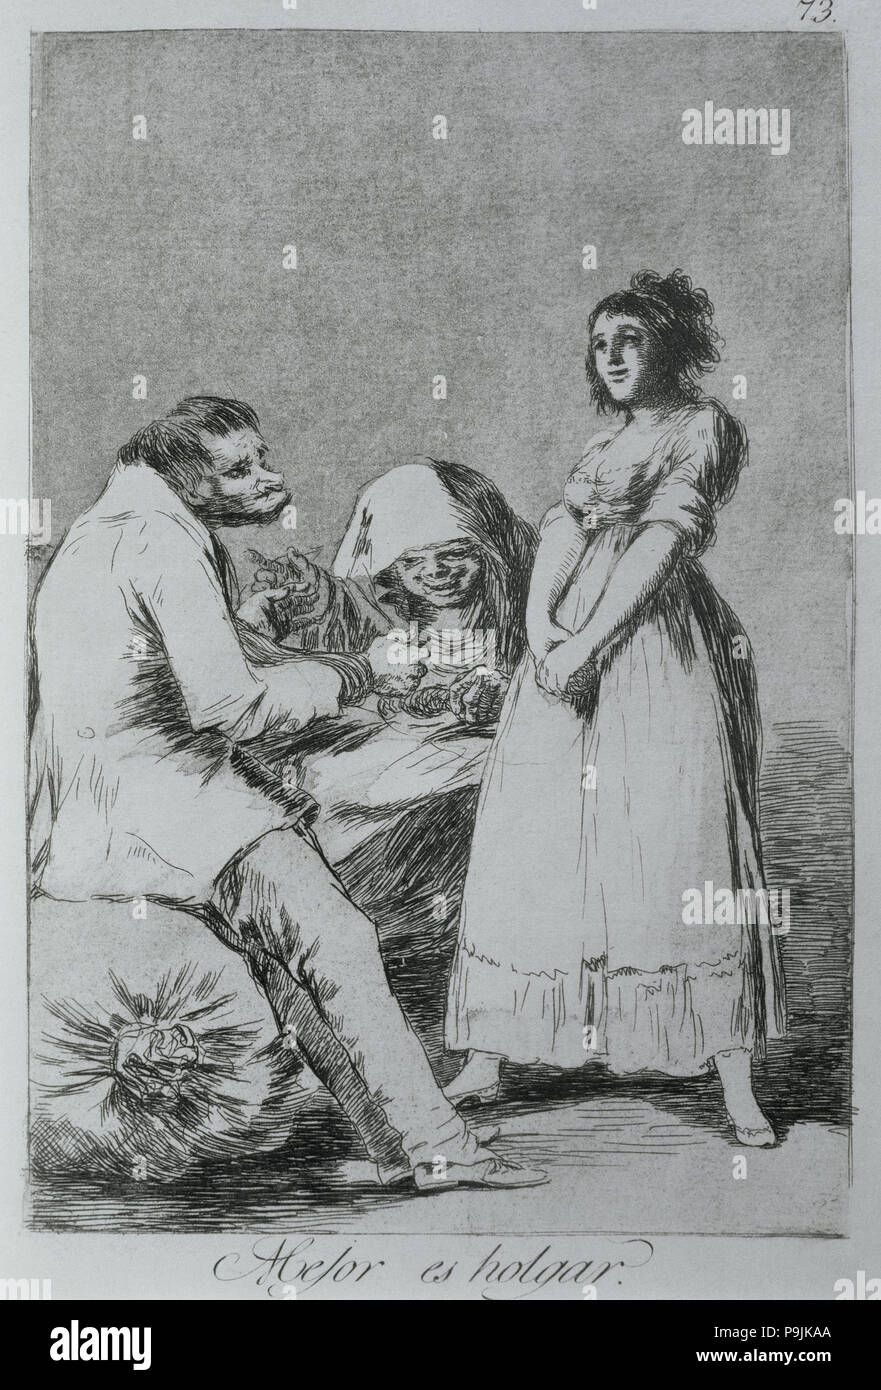 Los Caprichos, serie di incisioni di Francisco de Goya (1746-1828), la piastra 73: 'Mejor es holgar' (… Foto Stock